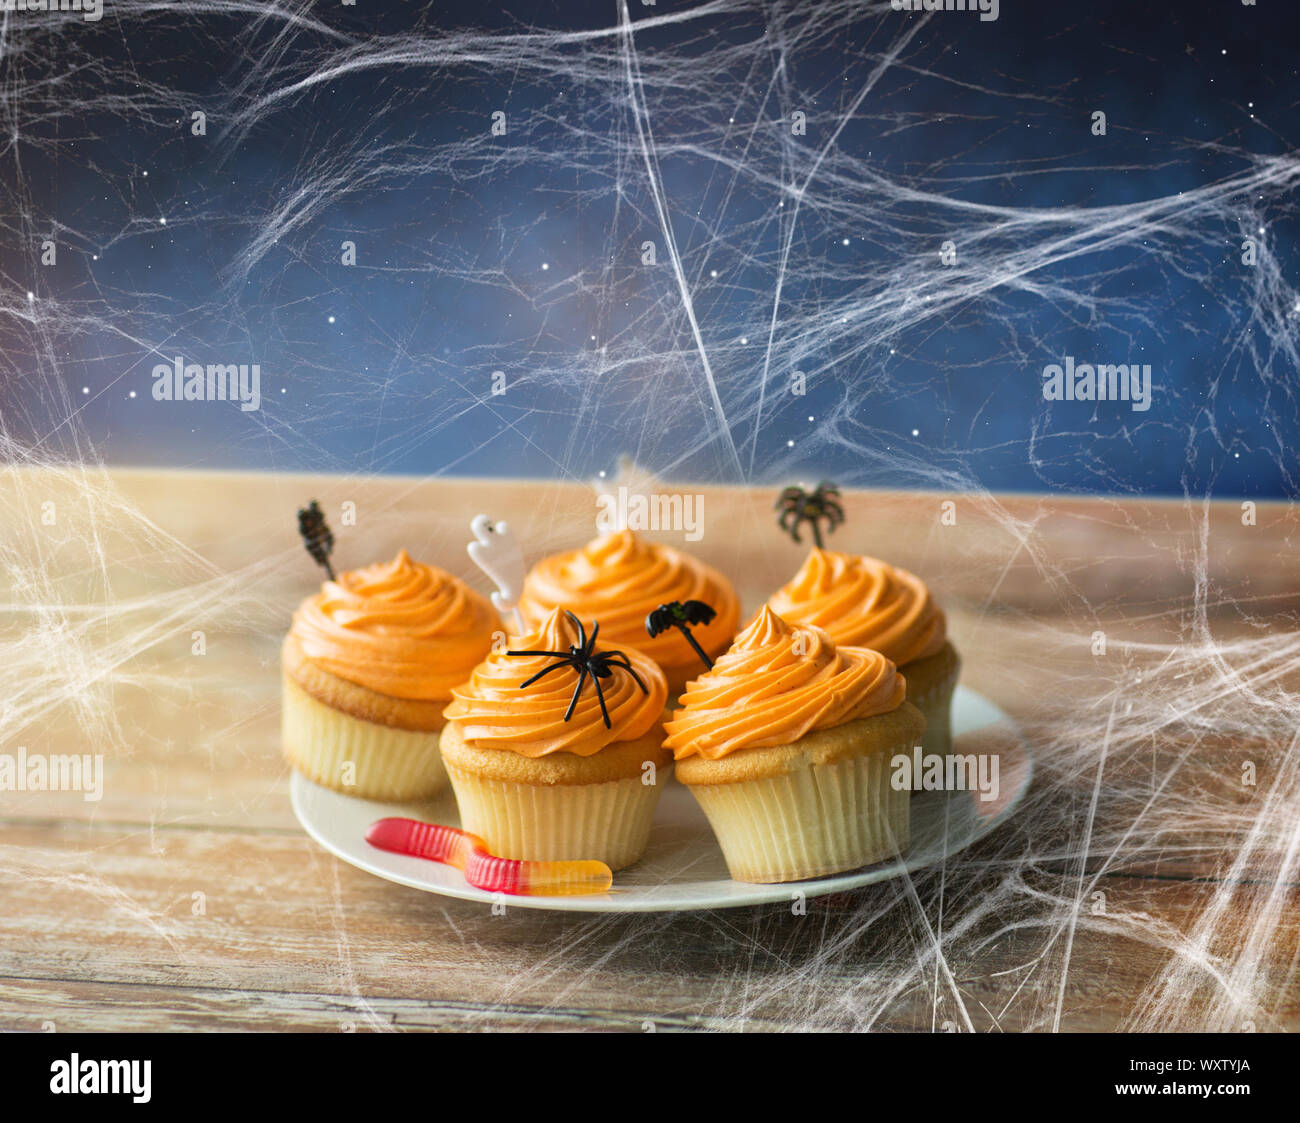 Essen, Backen und Urlaub Konzept - kleine Kuchen oder Muffins mit halloween party Dekorationen, Jelly Wurm Candy und Spiderweb auf hölzernen Tisch über starry n Stockfoto